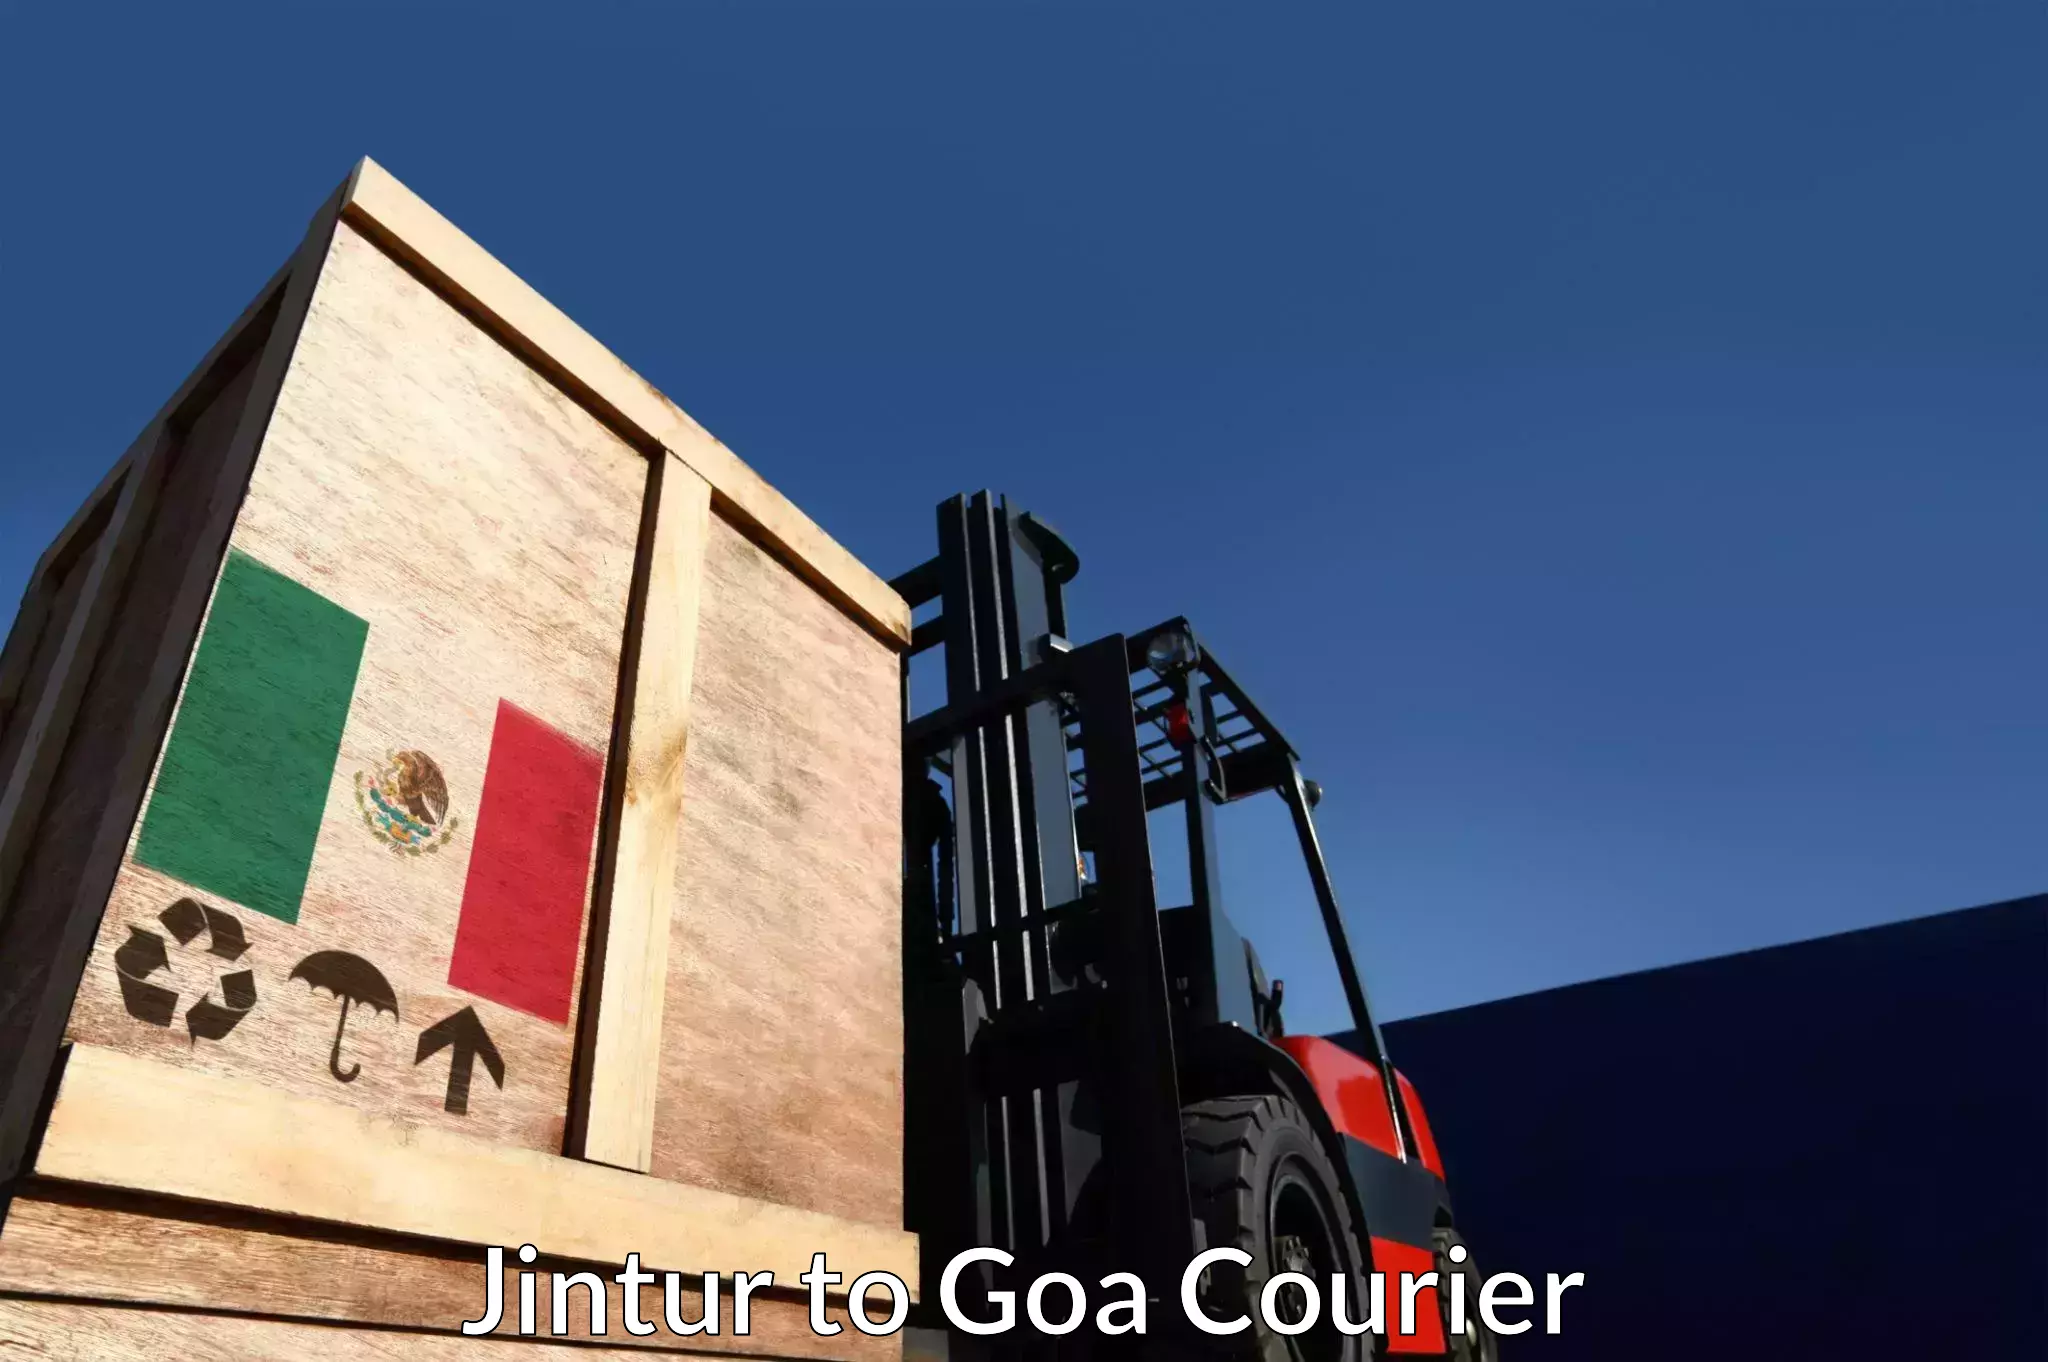 Courier service comparison Jintur to Goa